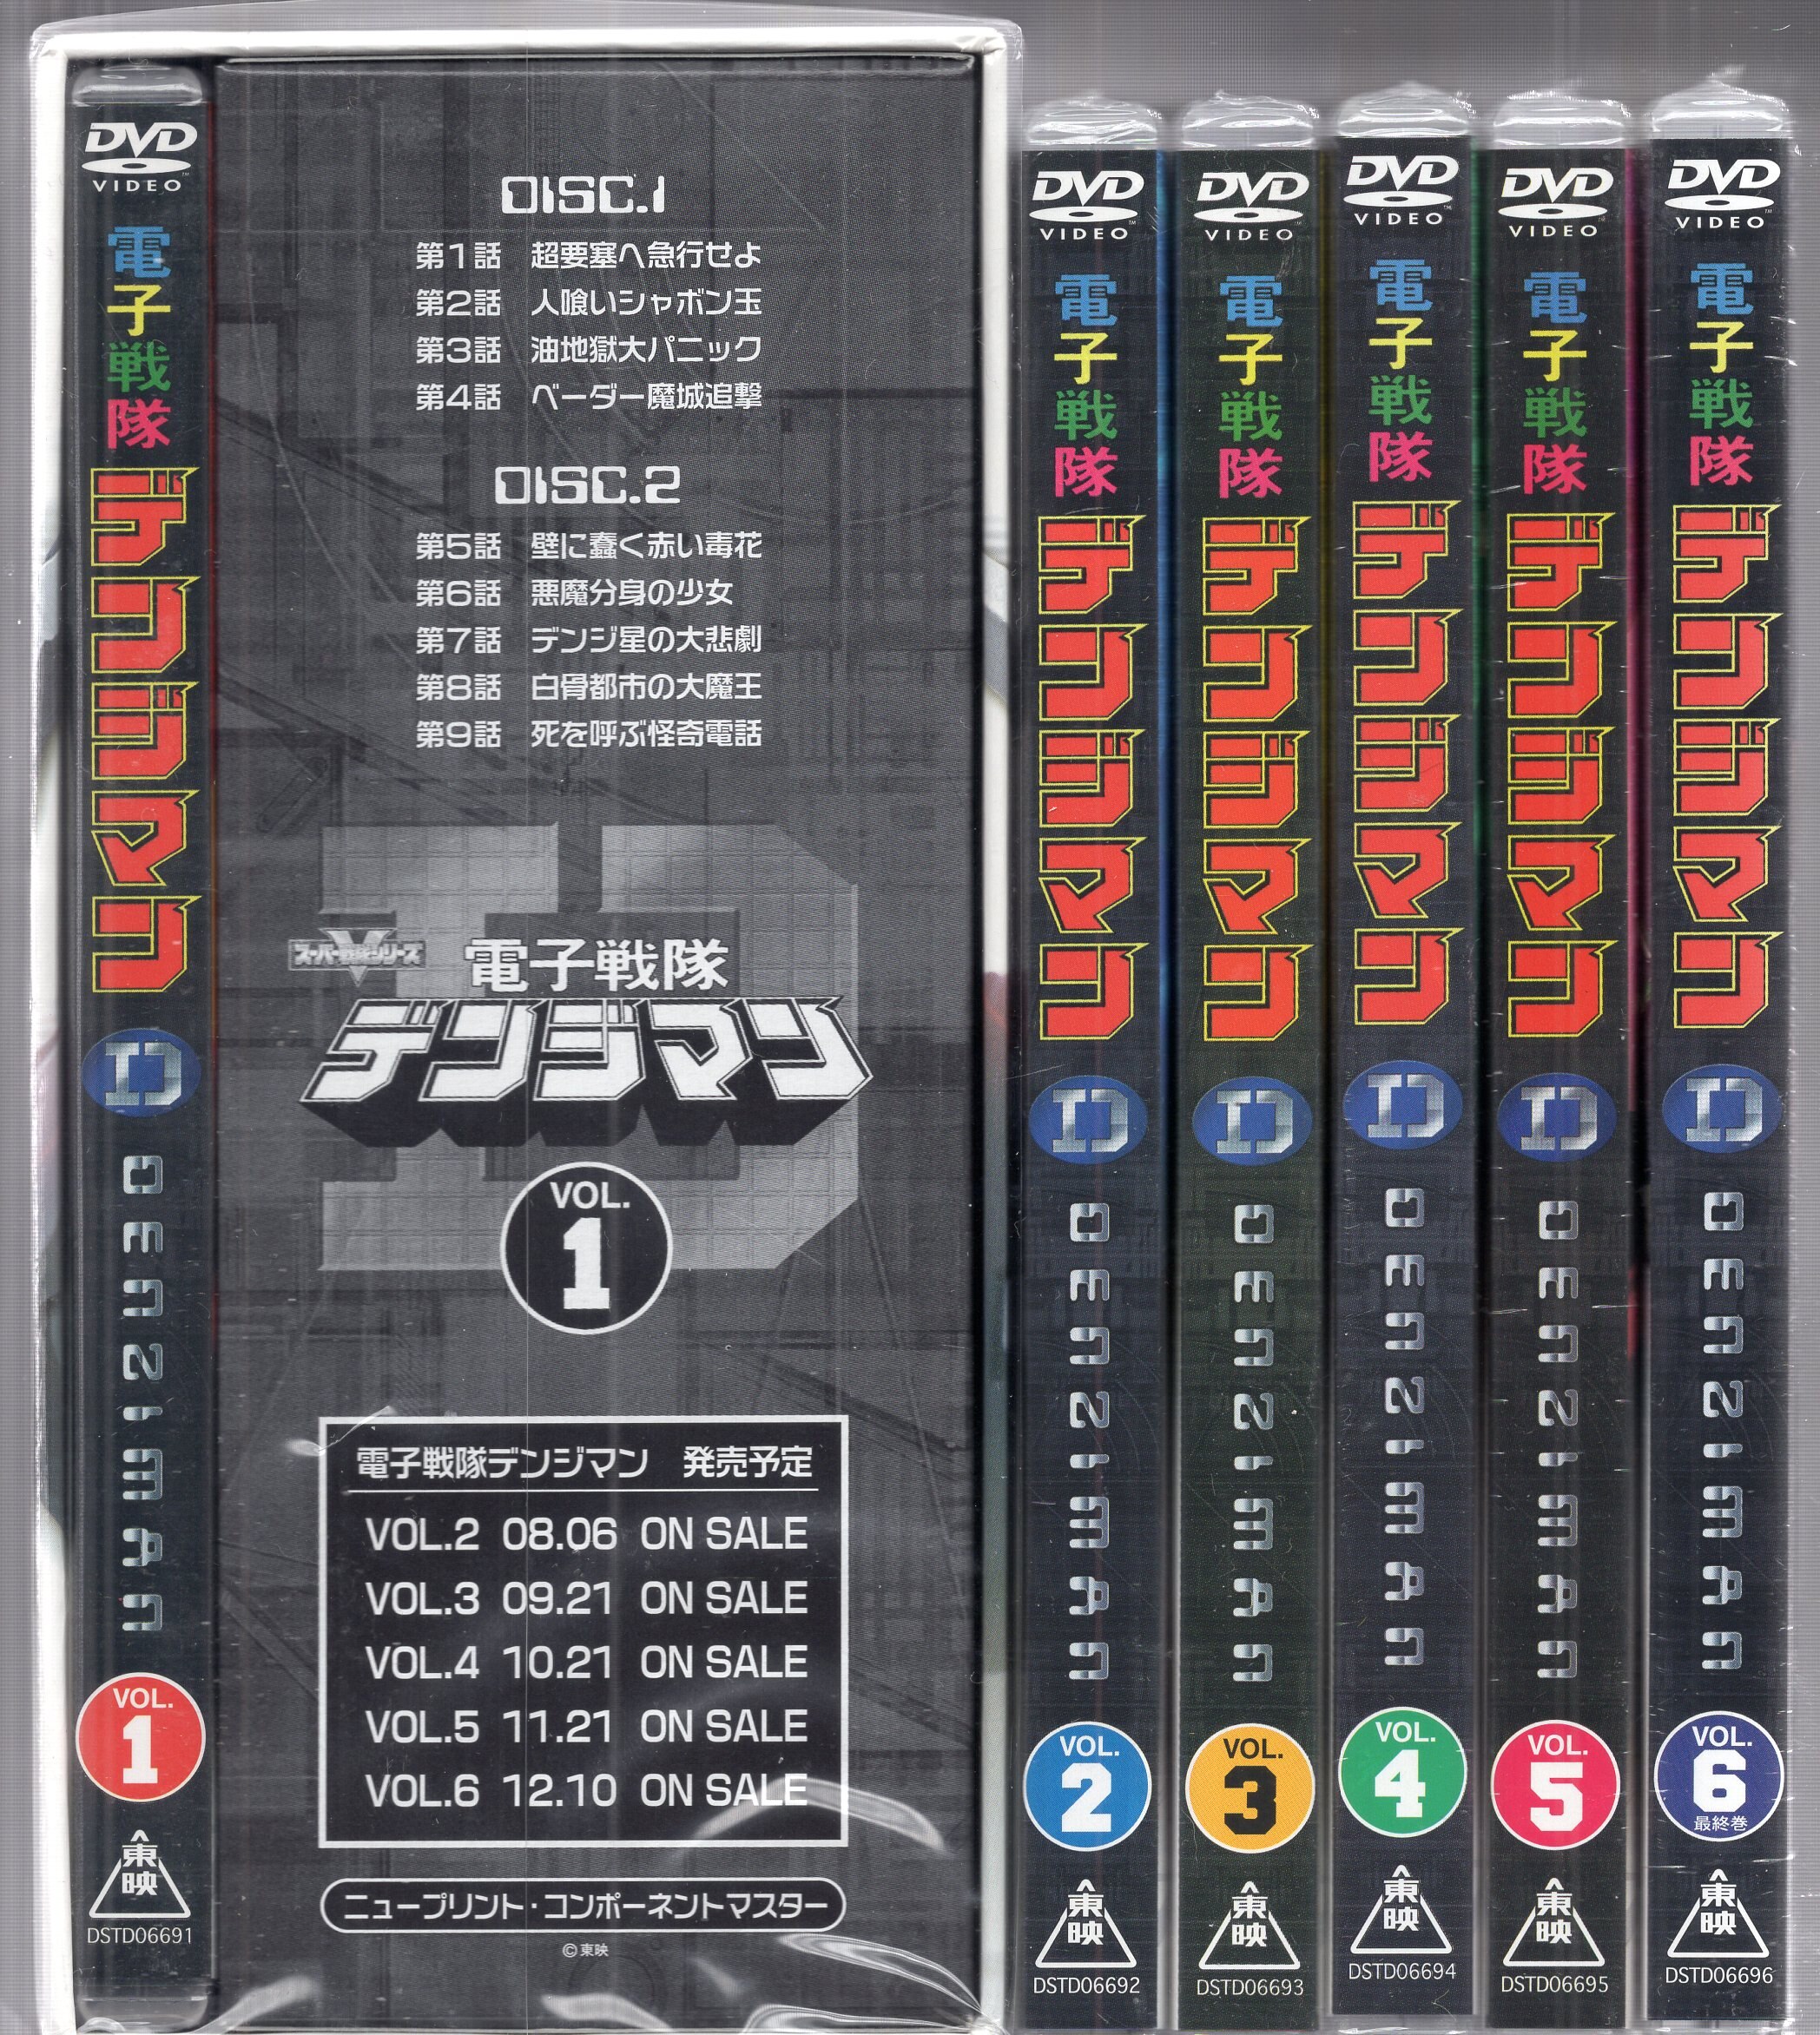 未開封 激レア 特撮DVD スーパー戦隊 電子戦隊デンジマンBOX付全6巻セット-